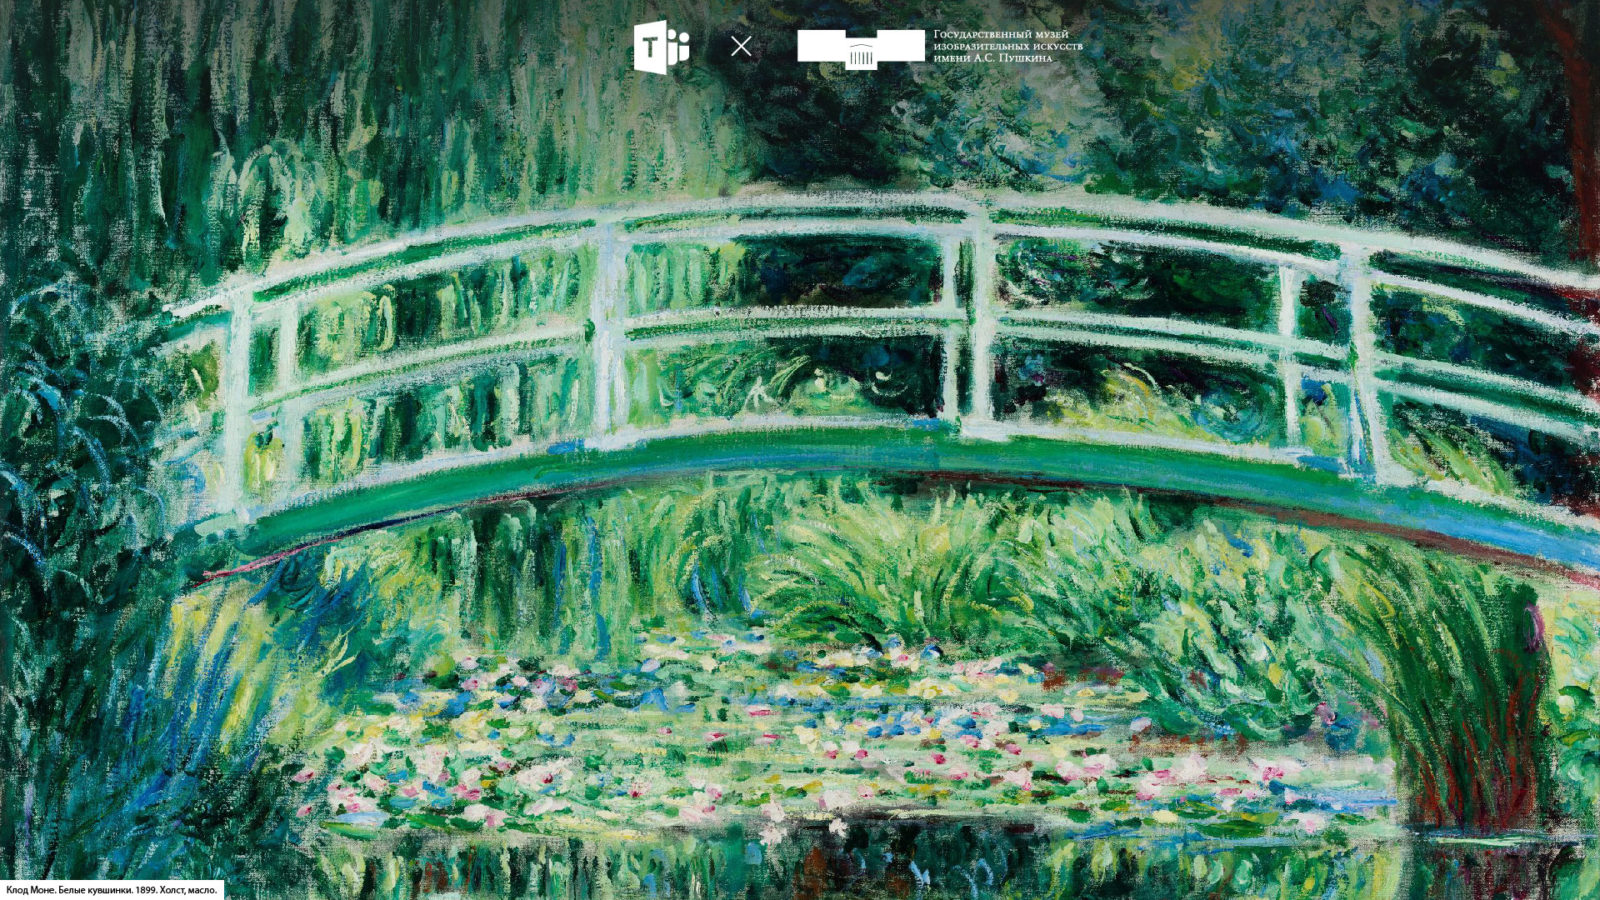 Государственный музей изобразительных искусств имени А.С.Пушкина разработал коллекцию уникальных фонов для онлайн-конференций в Microsoft Teams.